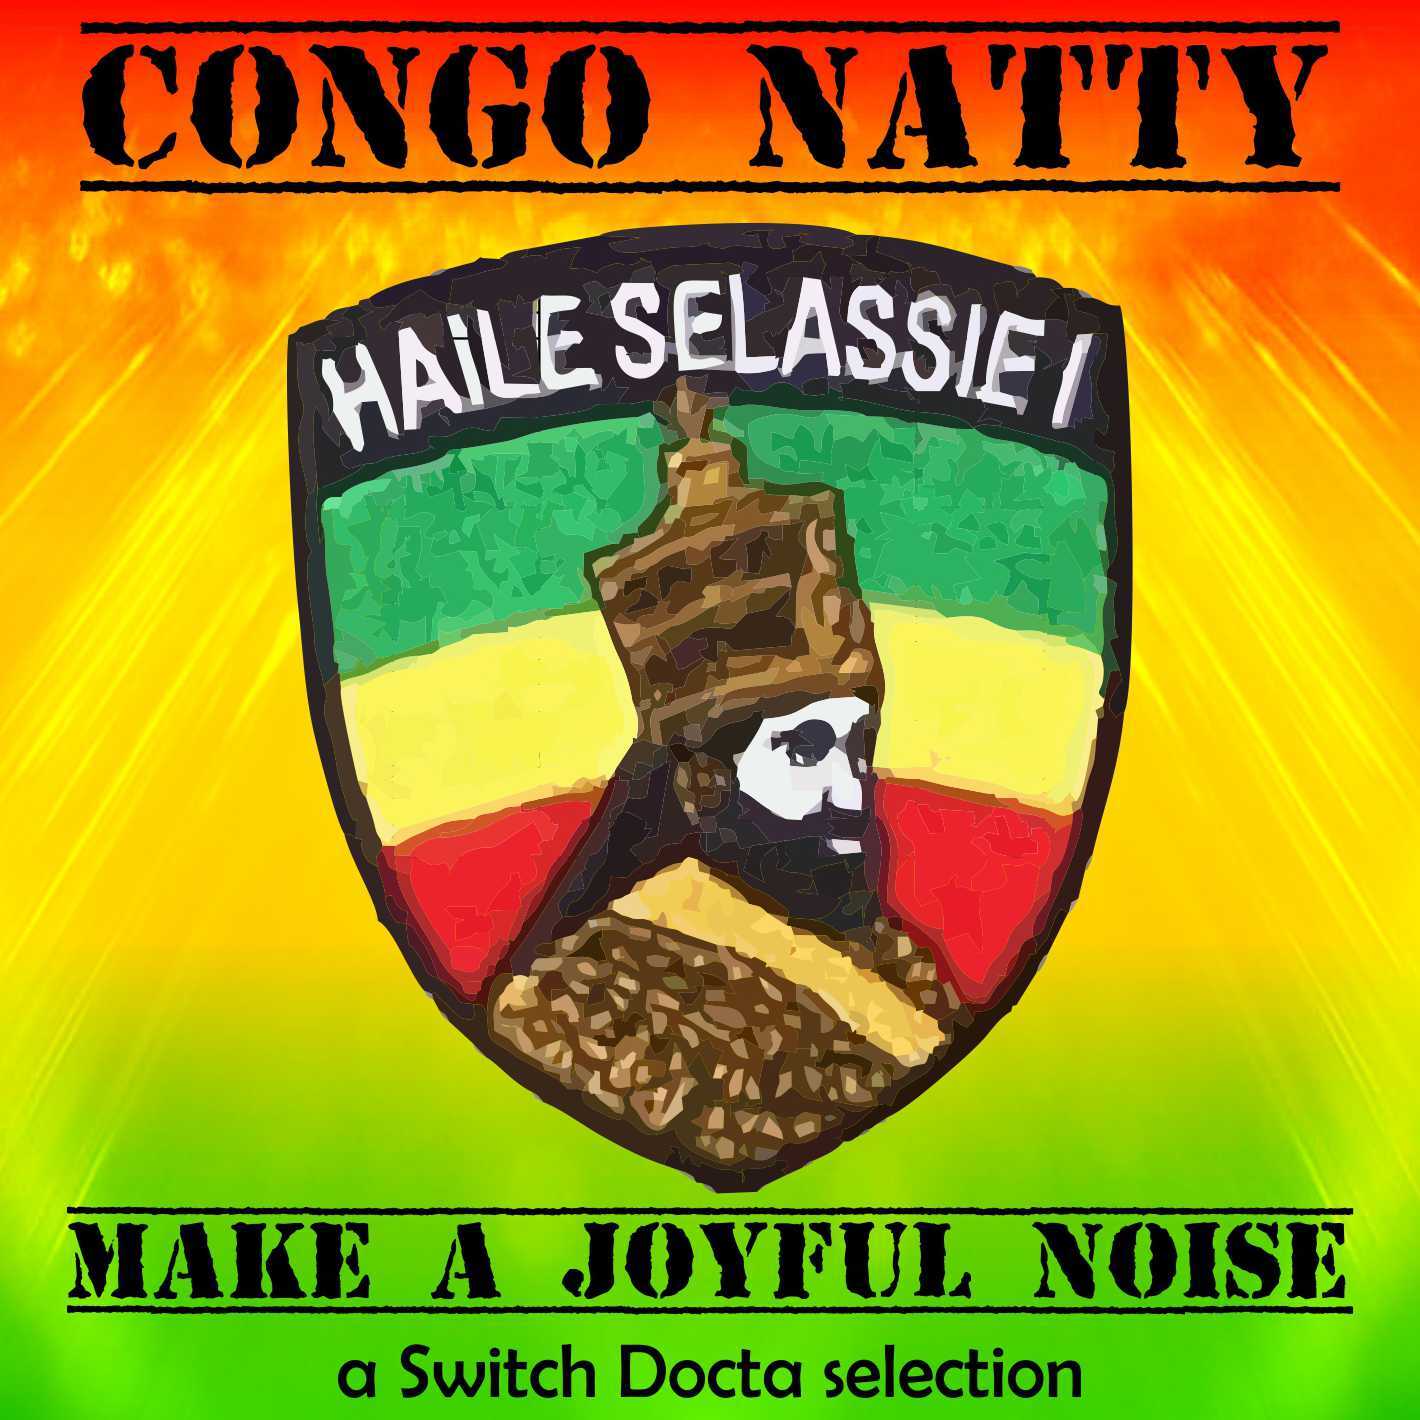 74_Congo_Natty_Make_a_Joyful_Noise_Cover_gross.jpg